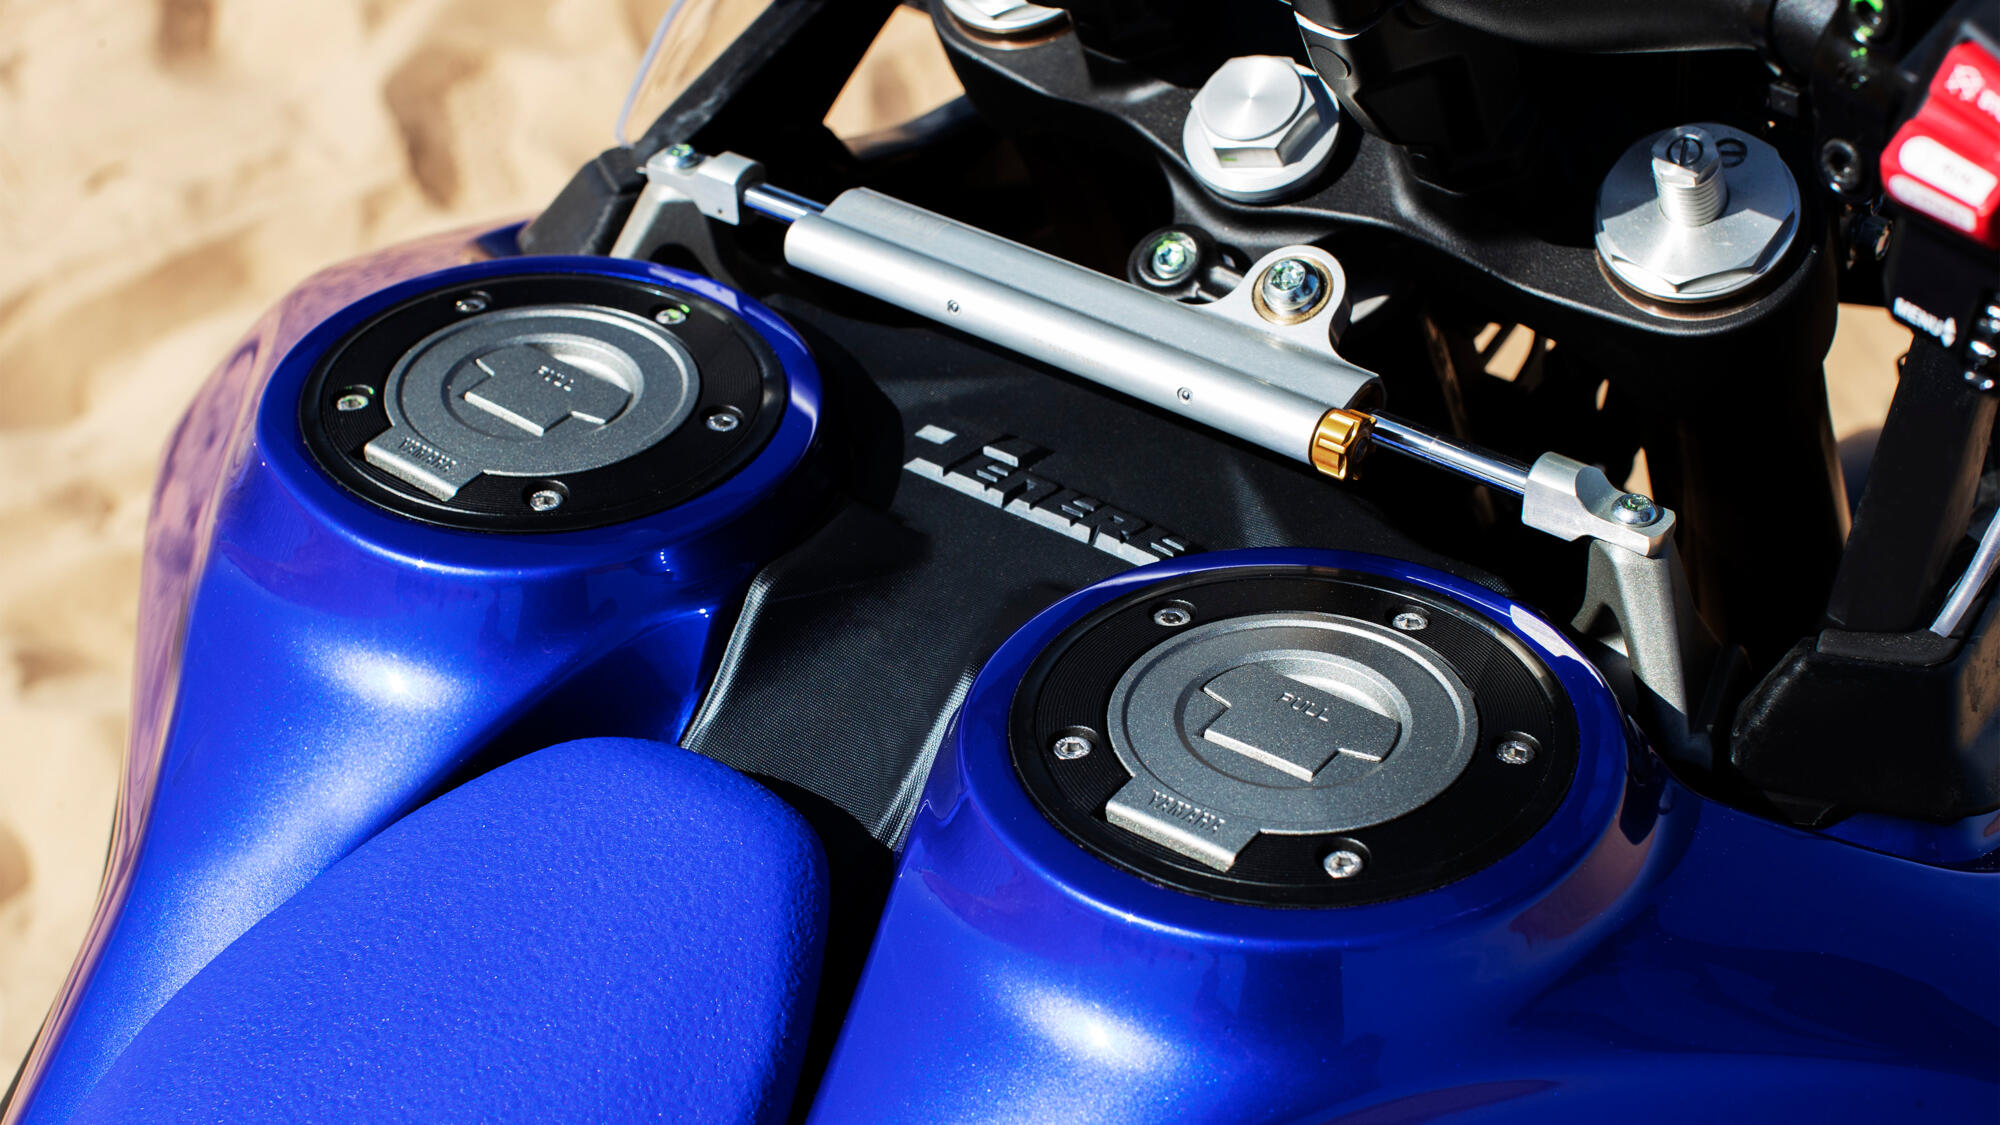 Motocykly Yamaha a nové palivo E10